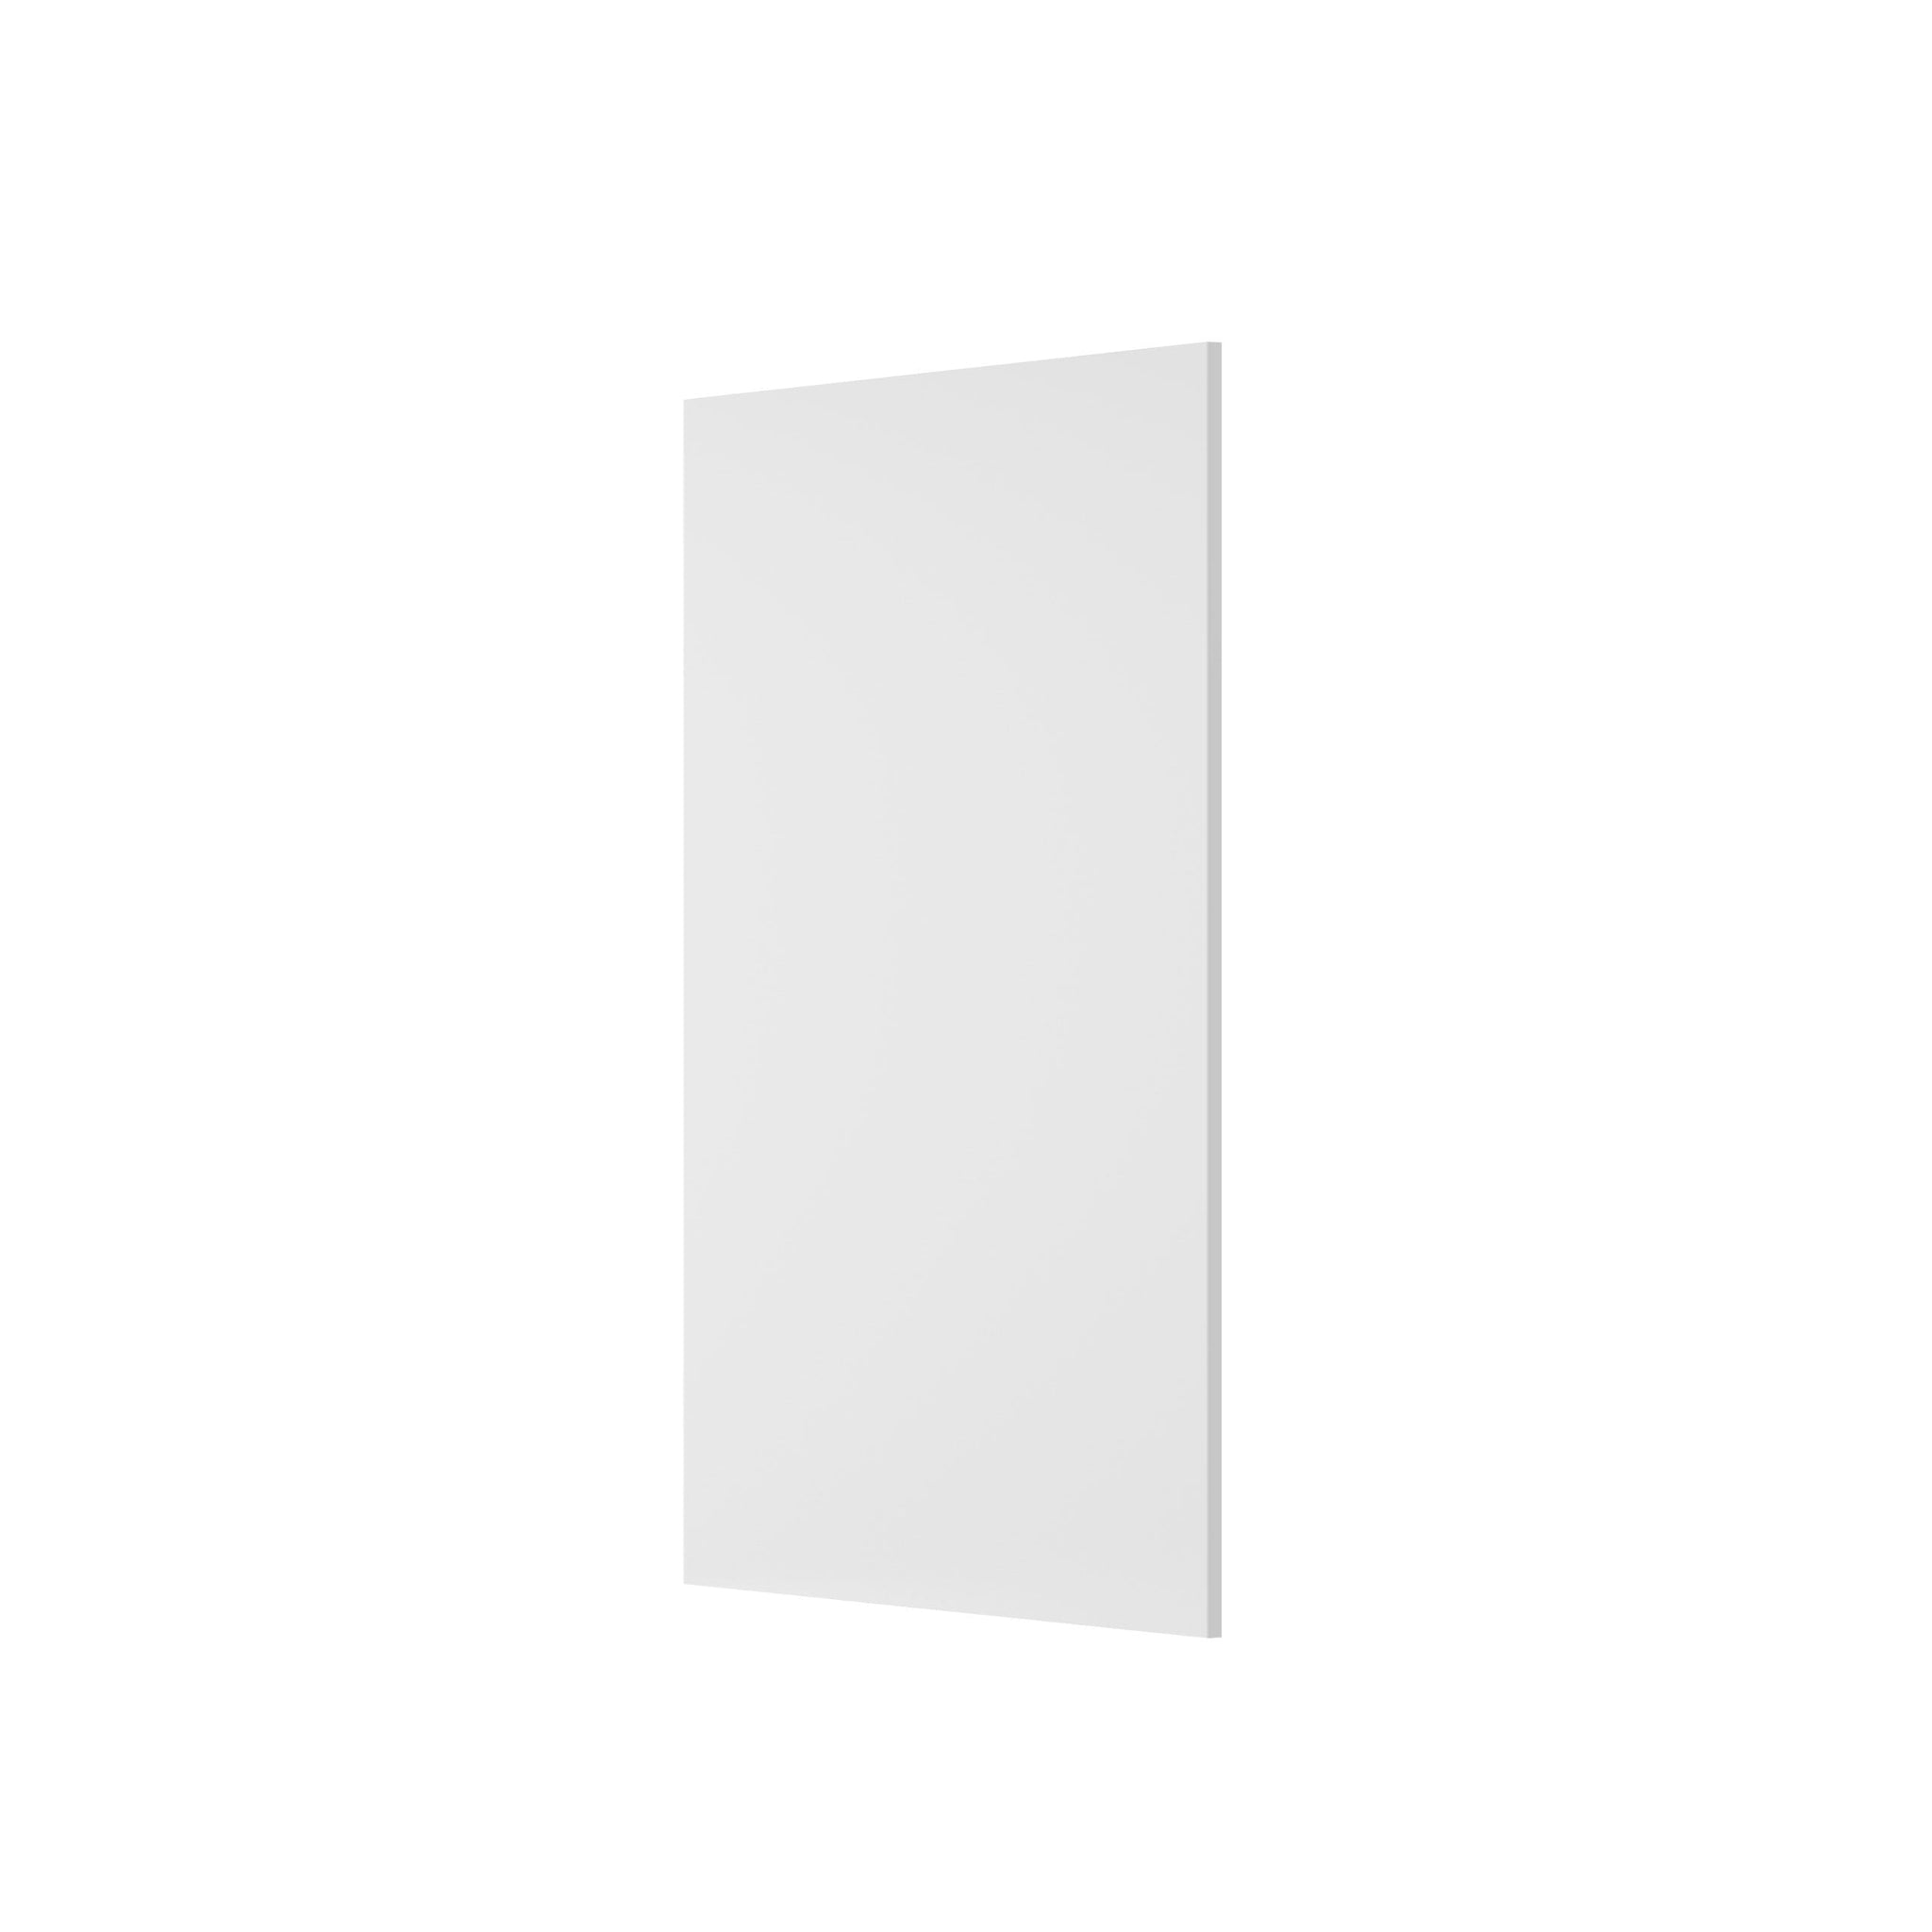 RTA - Fashion White - Base End Panel | 0.75"W x 34.5"H x 24"D